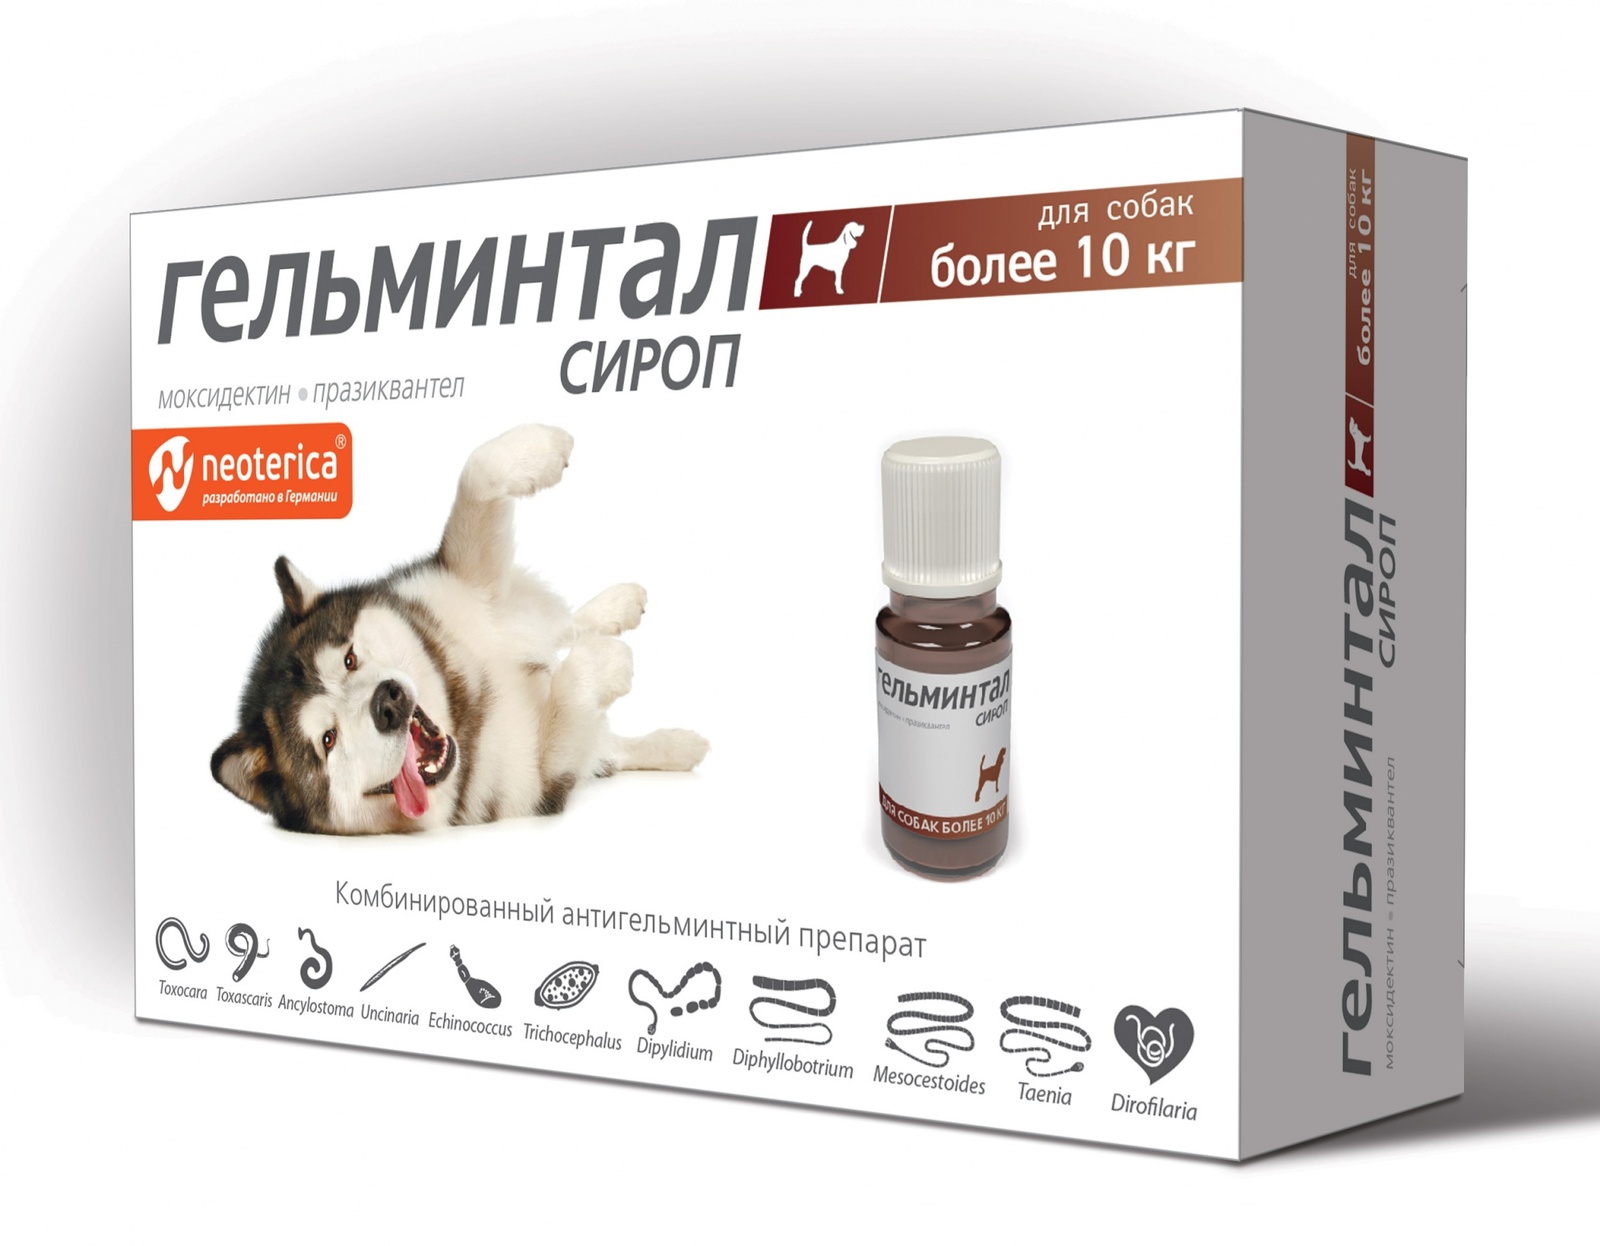 Гельминтал Гельминтал сироп от глистов для собак более 10 кг, 10 мл (60 г) гельминтал таблетки для собак более 10 кг